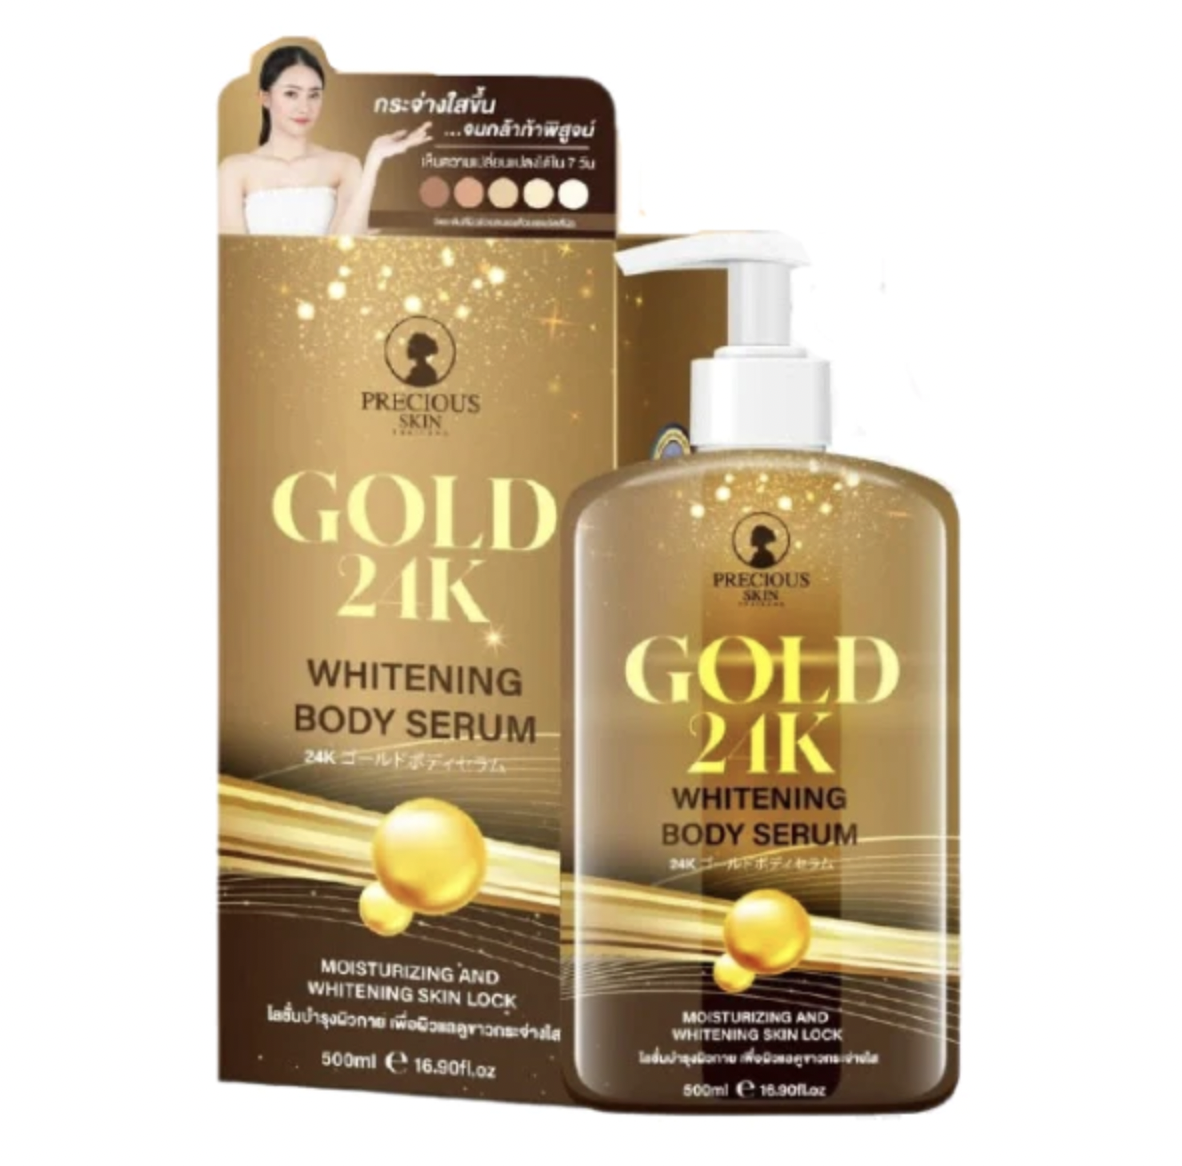 Precious Skin Gold 24K Whitening Body Serum